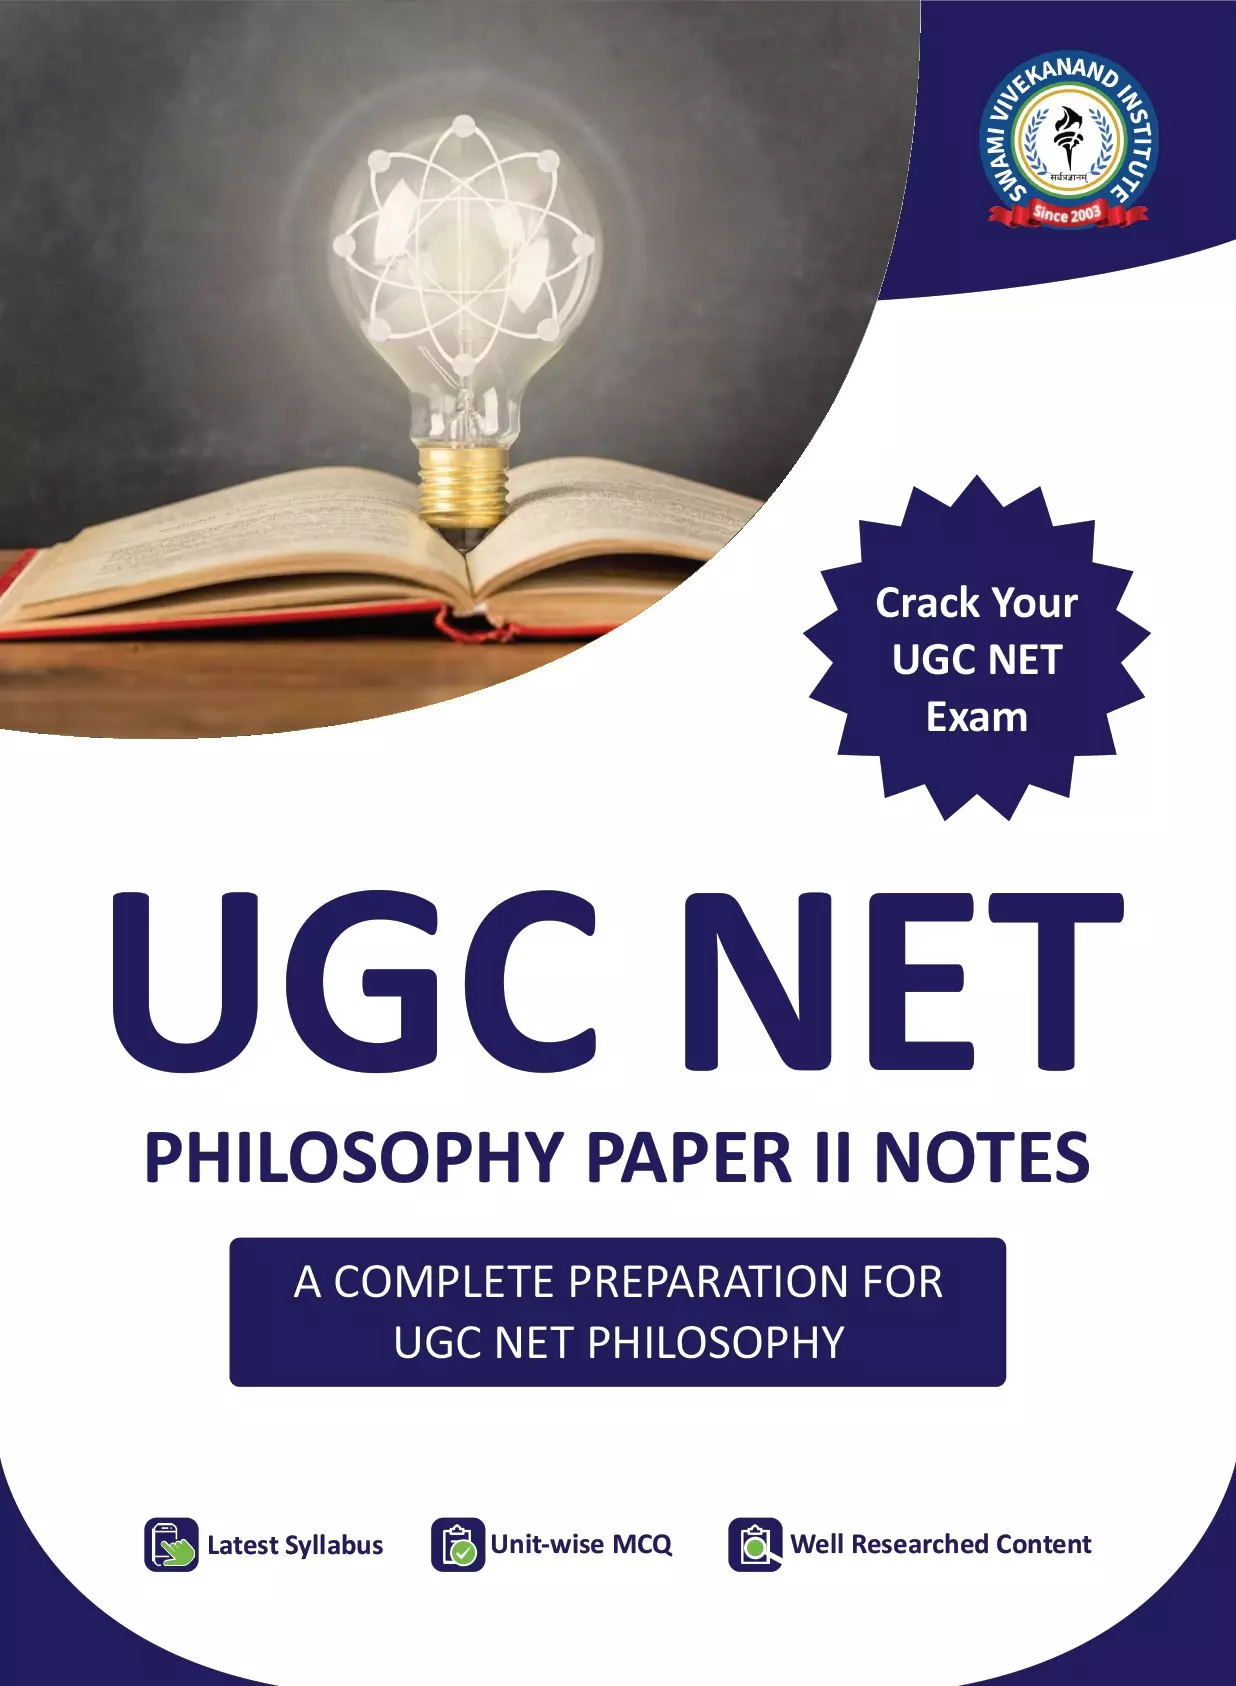 UGC NET PHILOSOPHY PAPER 2 NOTES